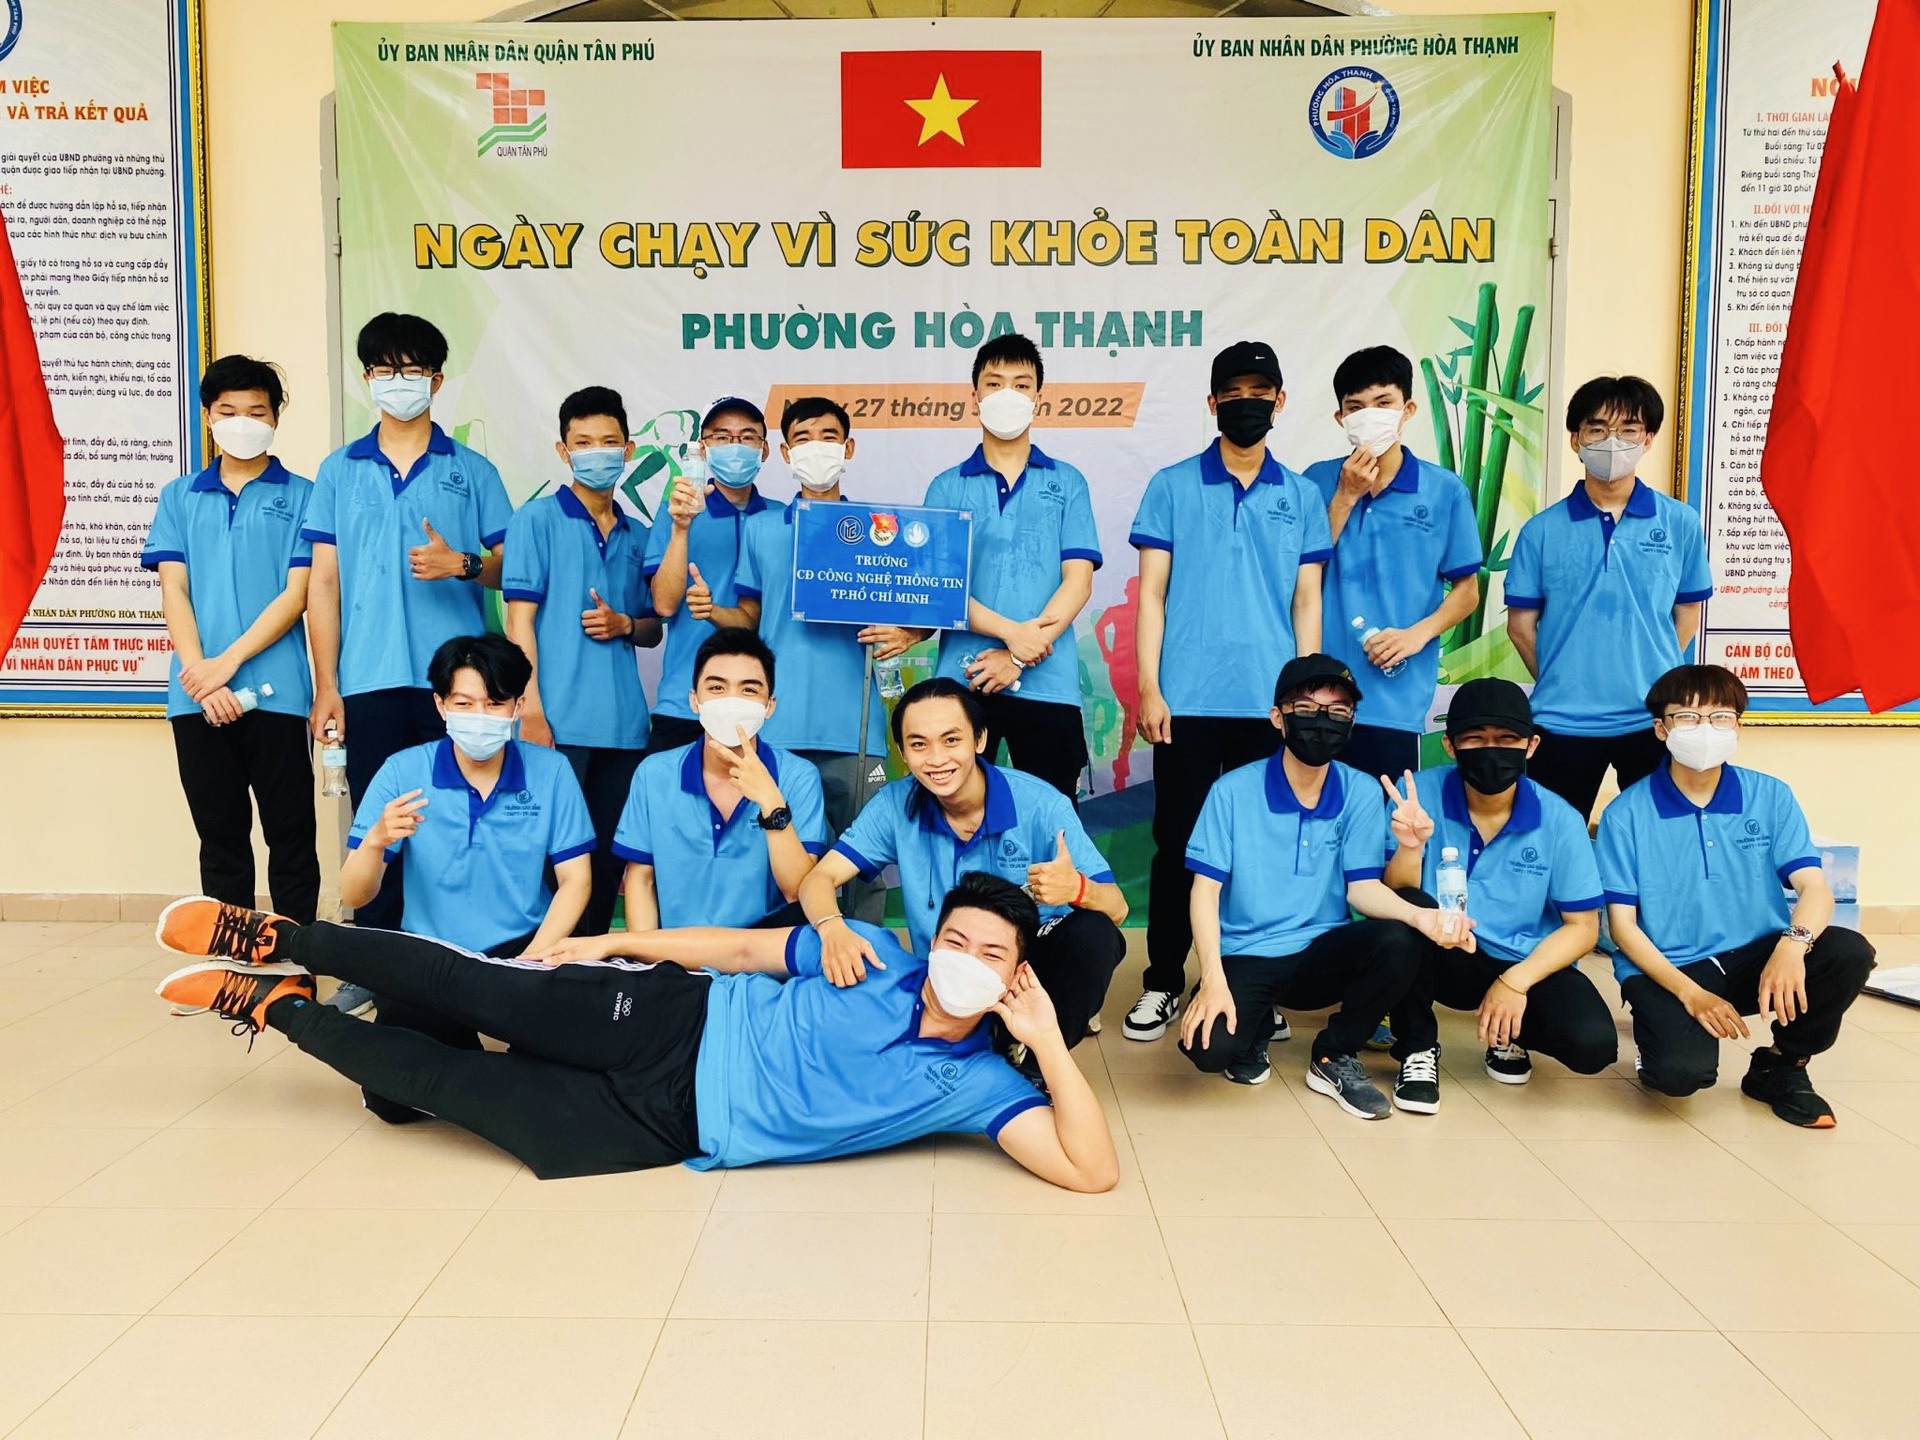 Sinh viên ITC tham gia ngày chạy Olympic vì sức khỏe toàn dân phường Hòa Thạnh năm 2022